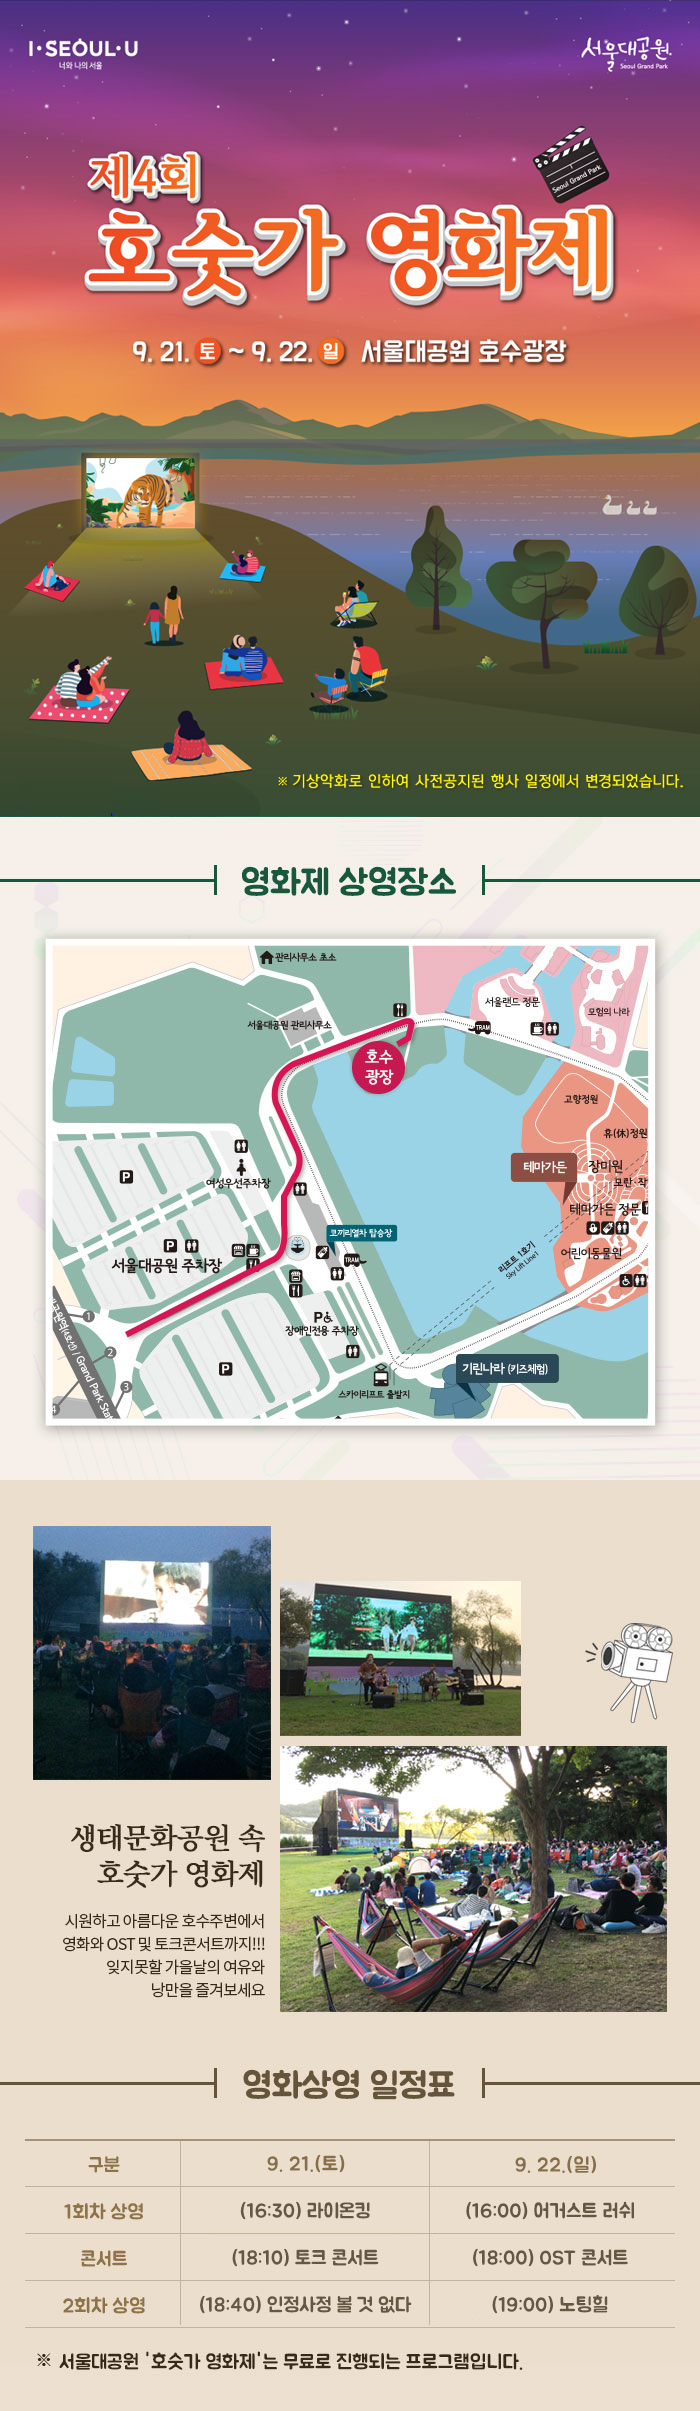 [서울시] 제4회 서울대공원 '호숫가 영화제' (9.21~22 개최)